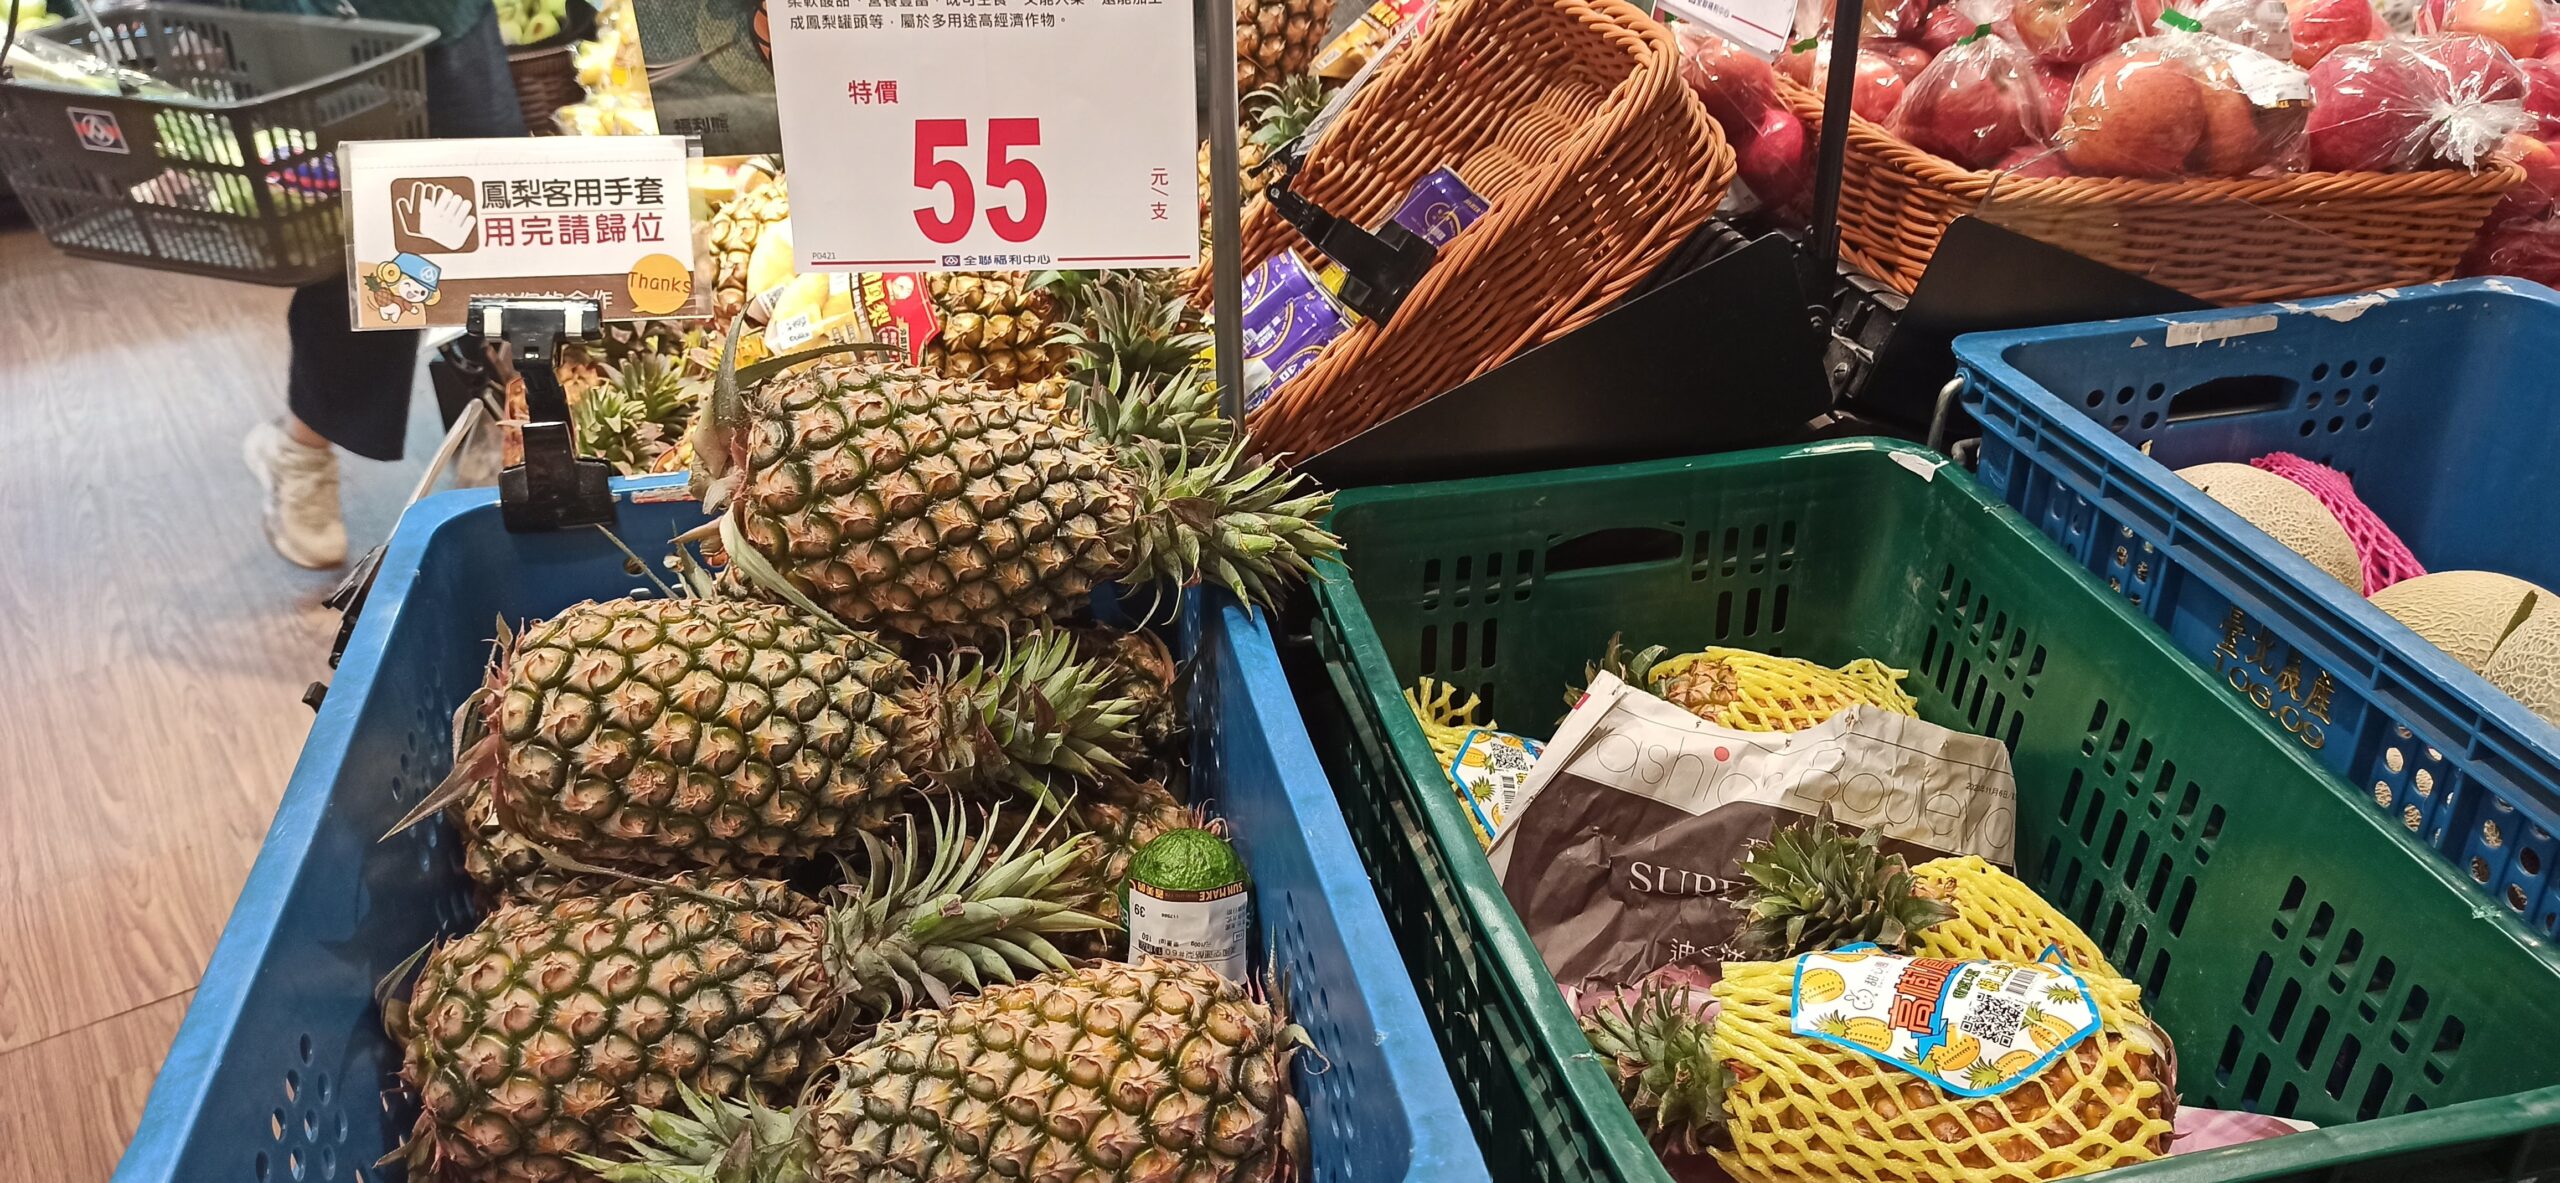 スーパーで売られているパイナップル